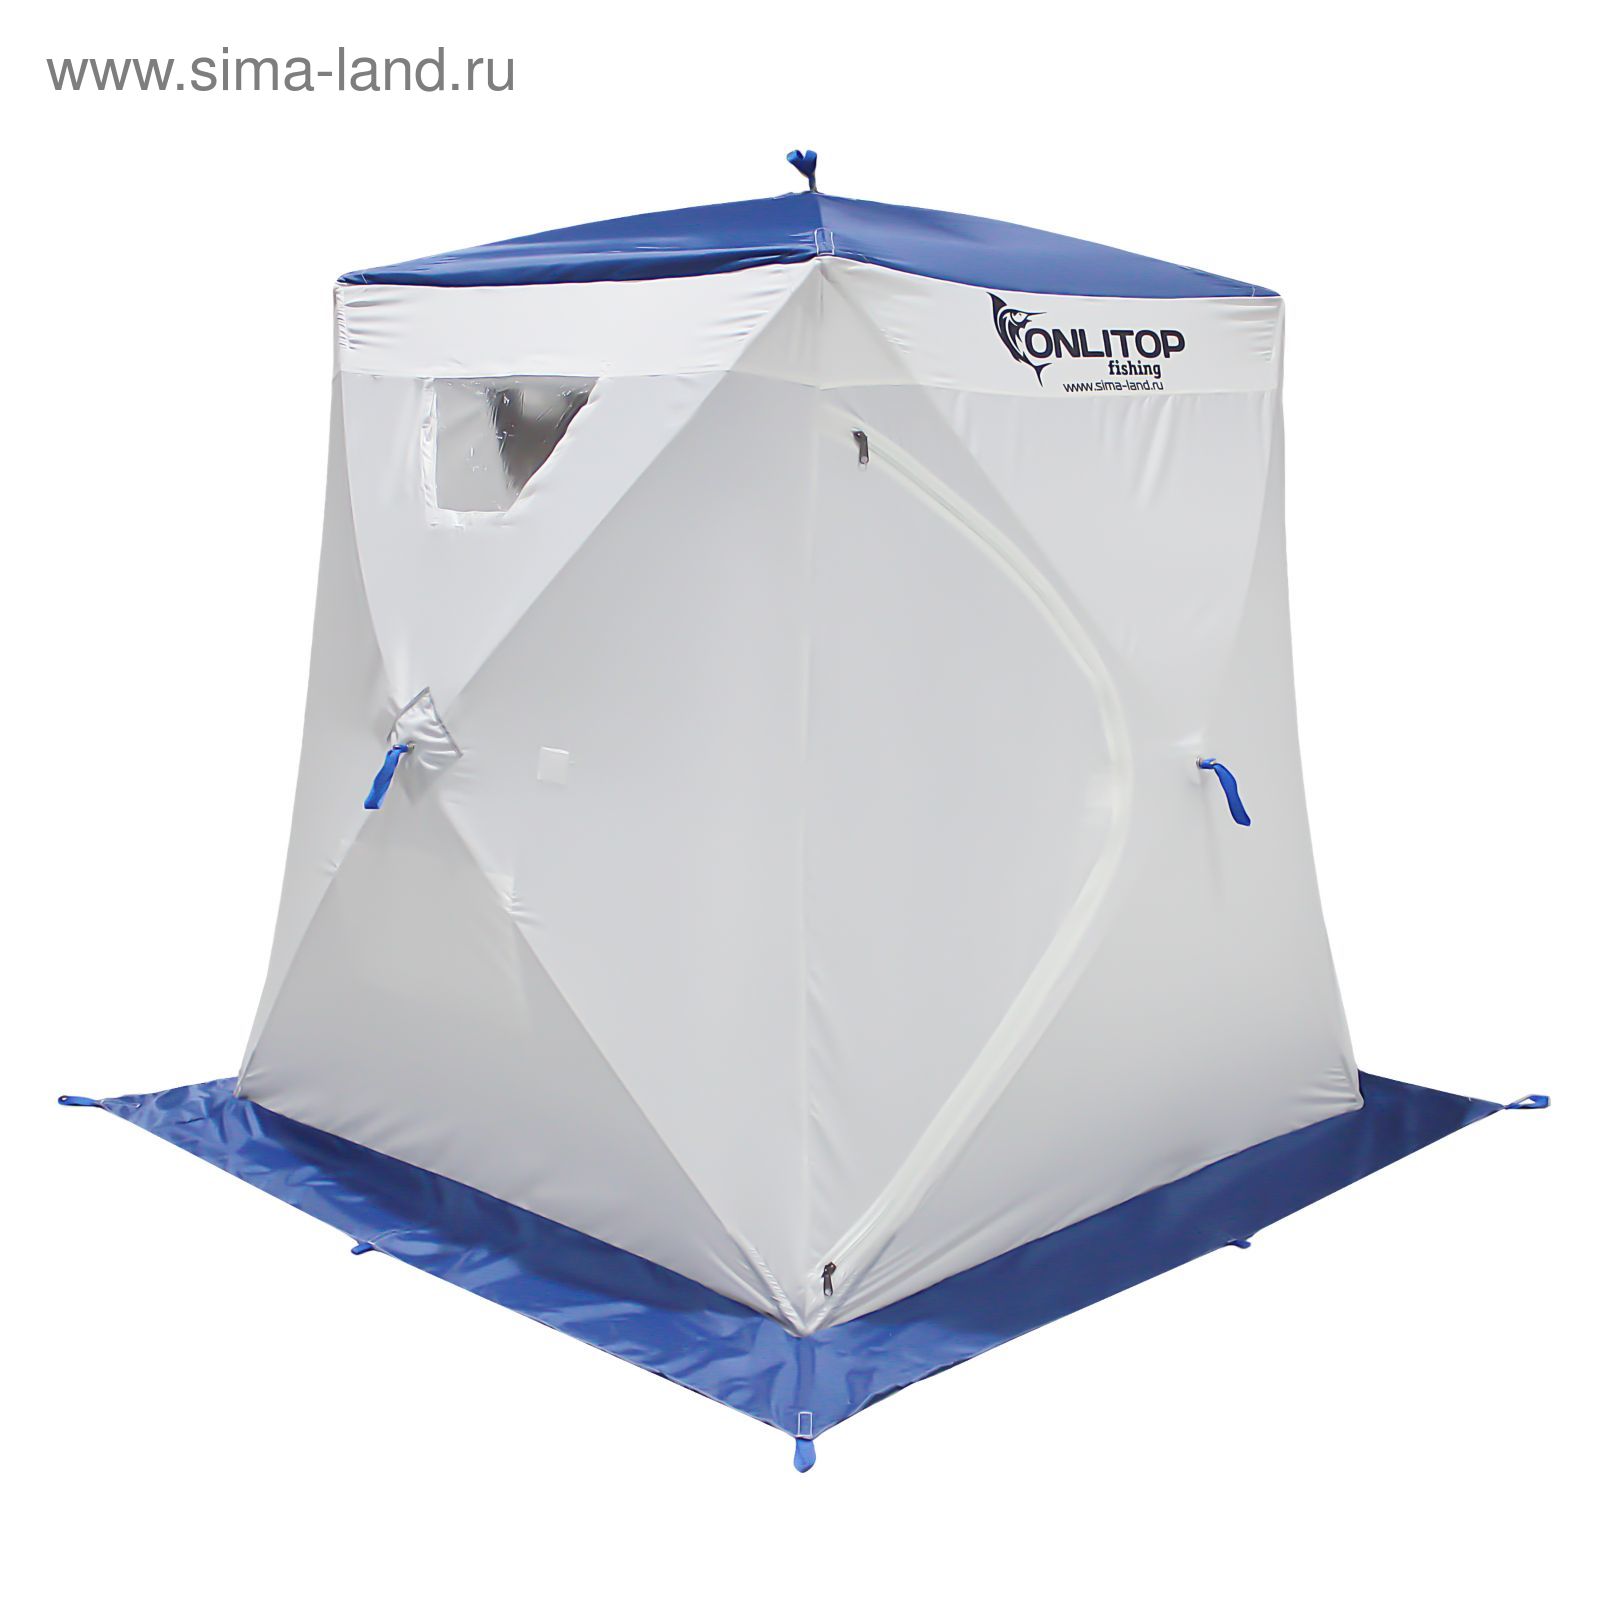 Палатка "Призма Люкс" 150, 1-слойная, цвет бело-синий